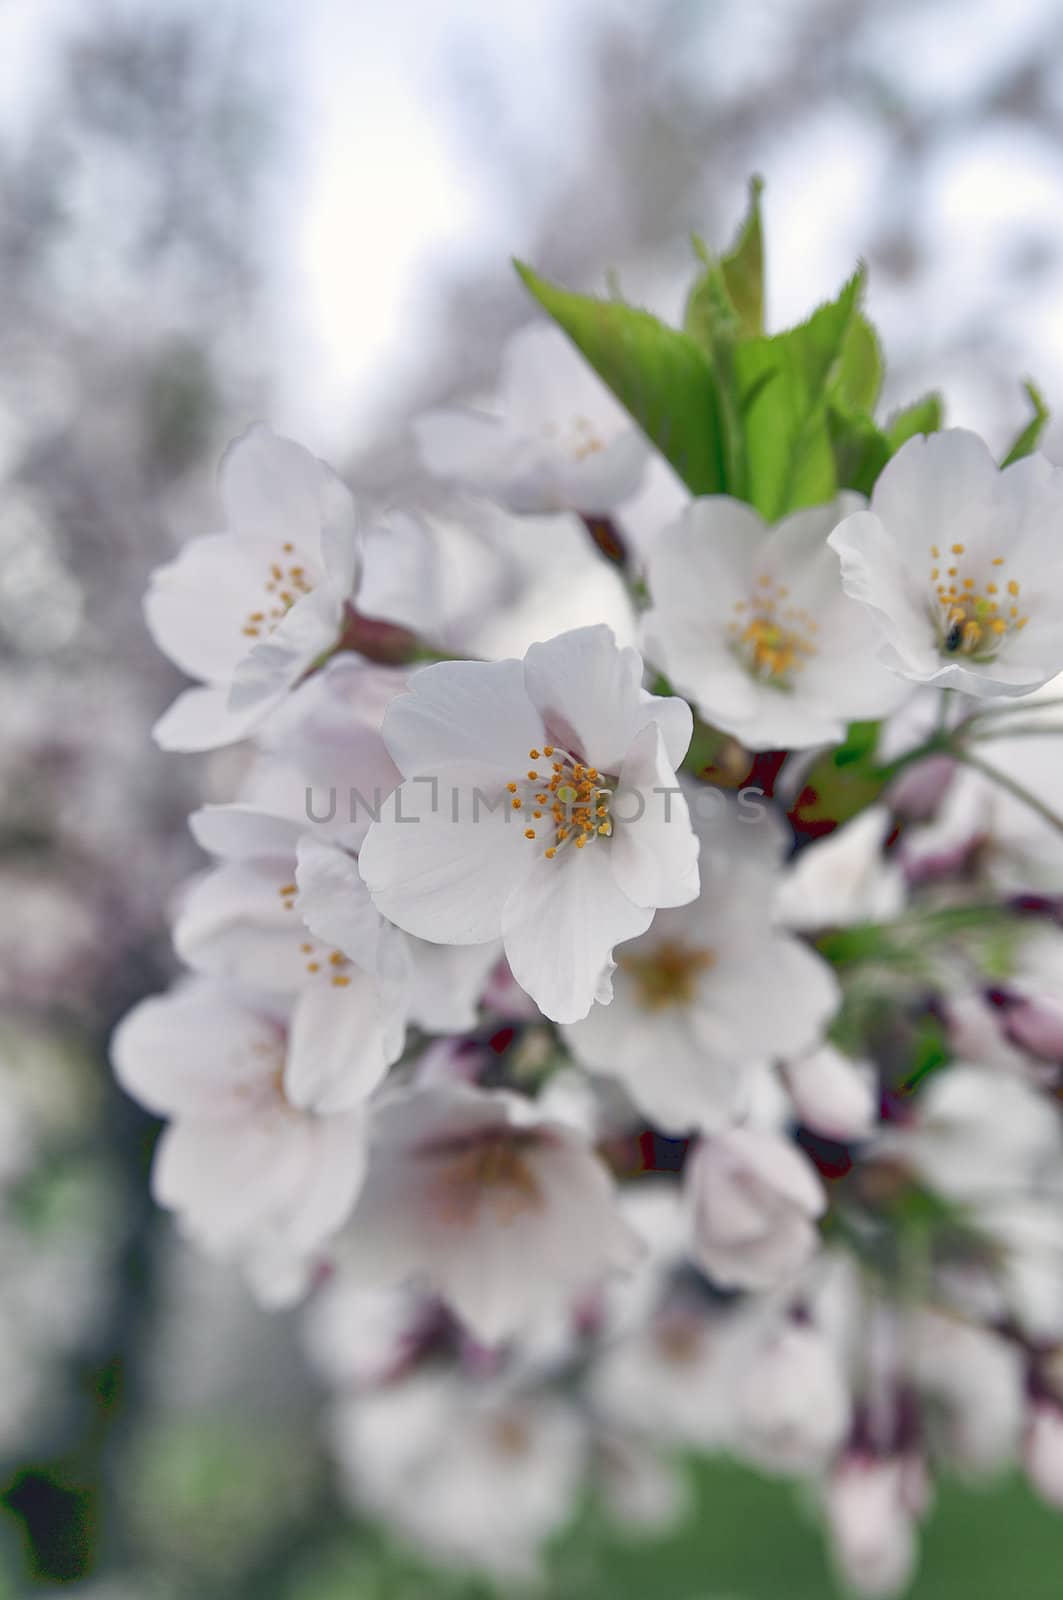 Beautiful flowering oriental cherry - Sakura. Spring morning